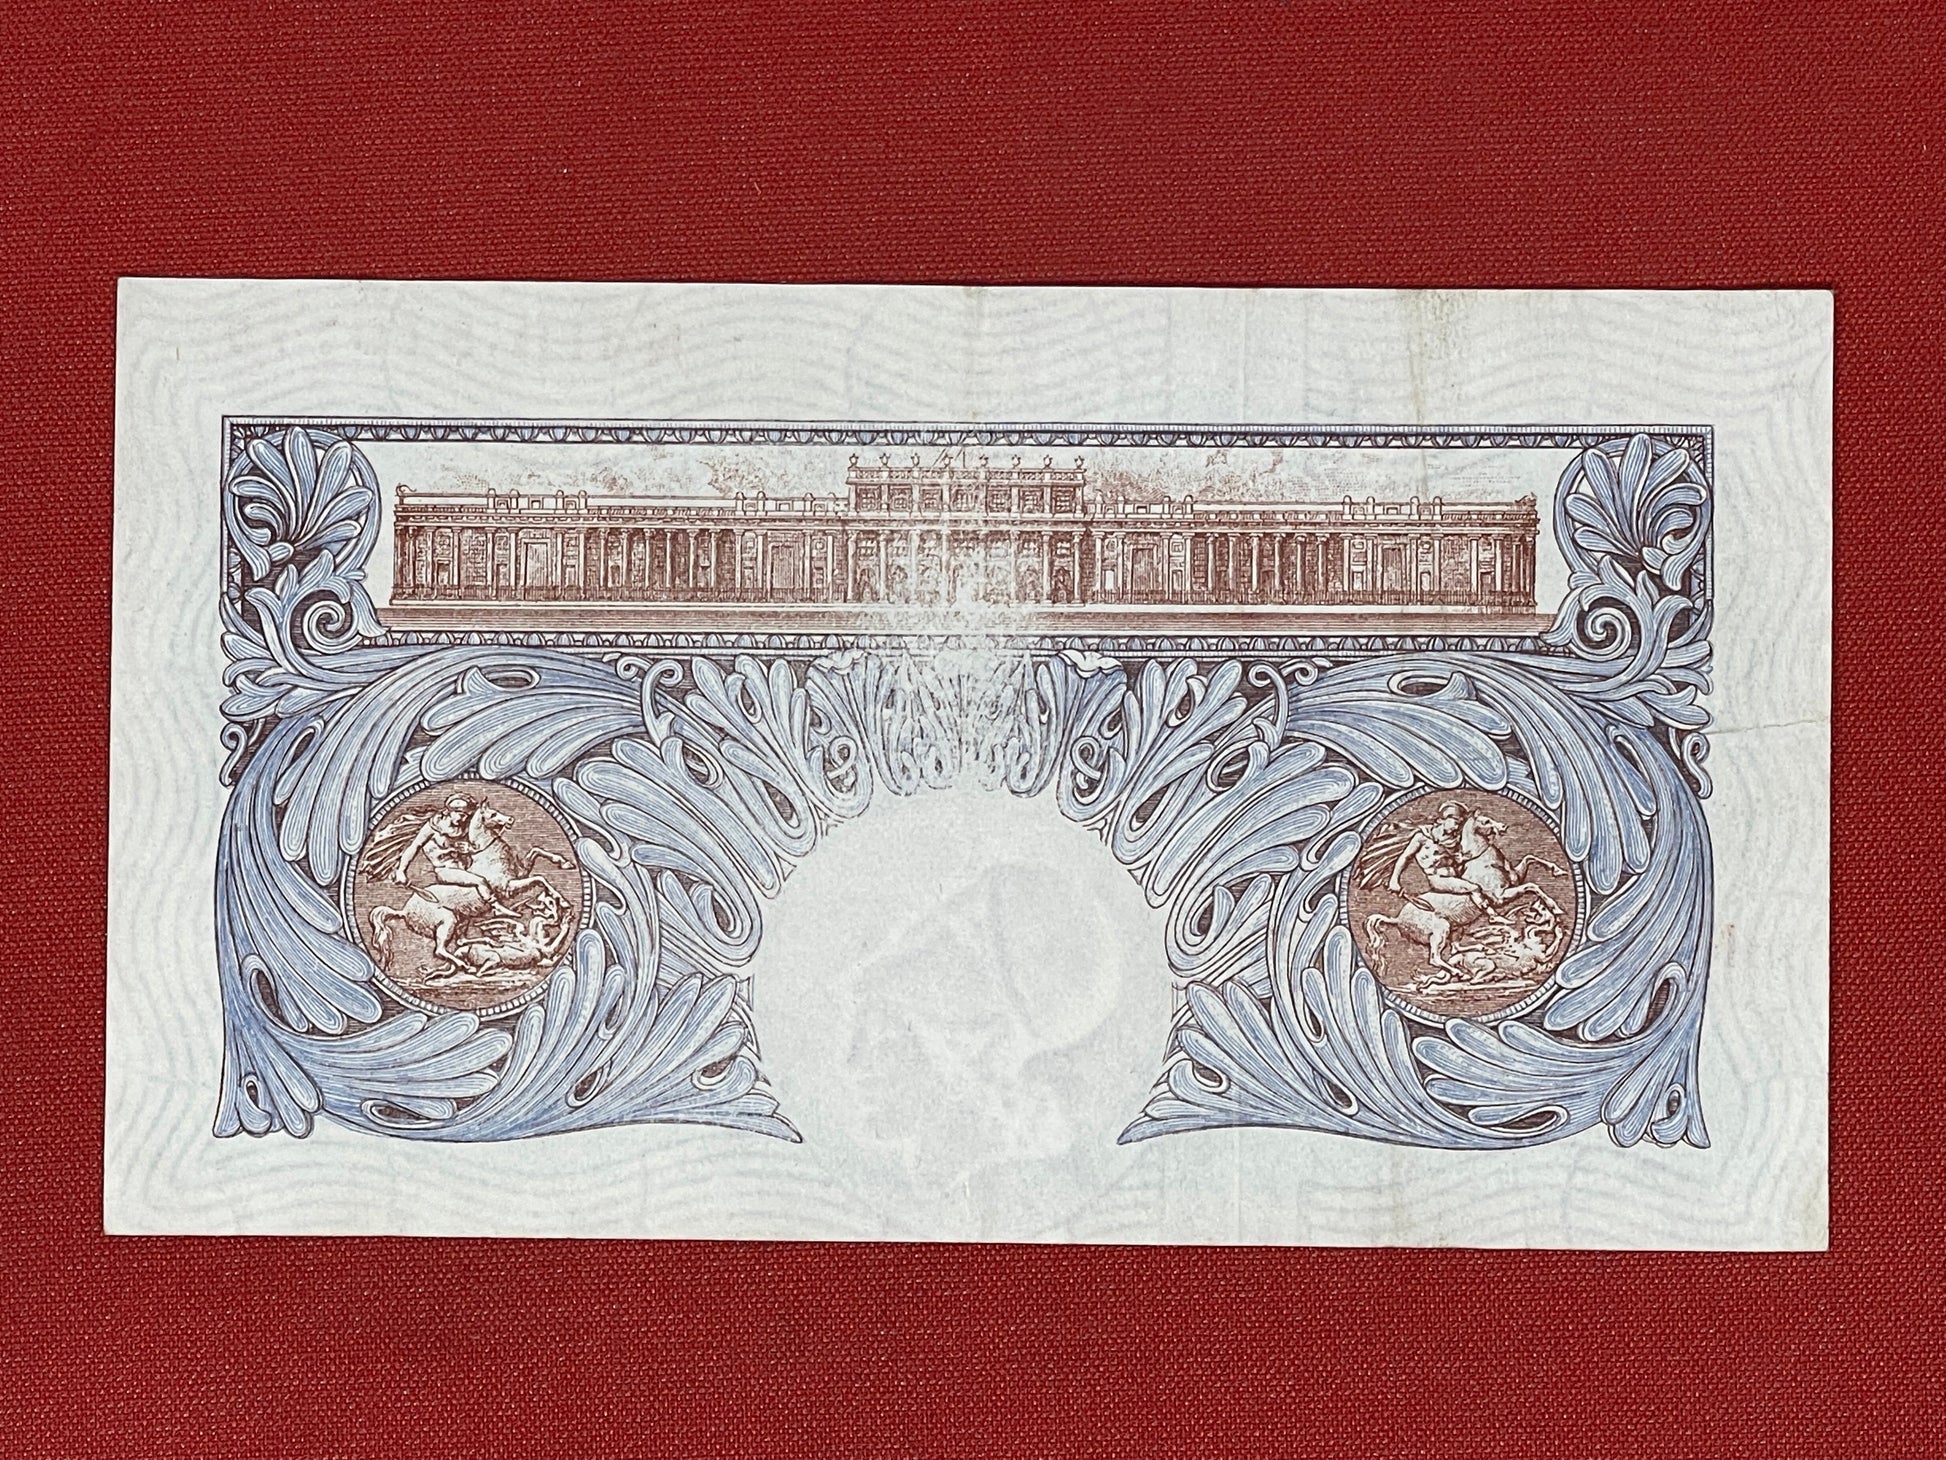 K.O. Peppiatt, One Pound, N41D819777 ( Dugg. B.249 ) Emergency Issue Banknote 29th March 1940